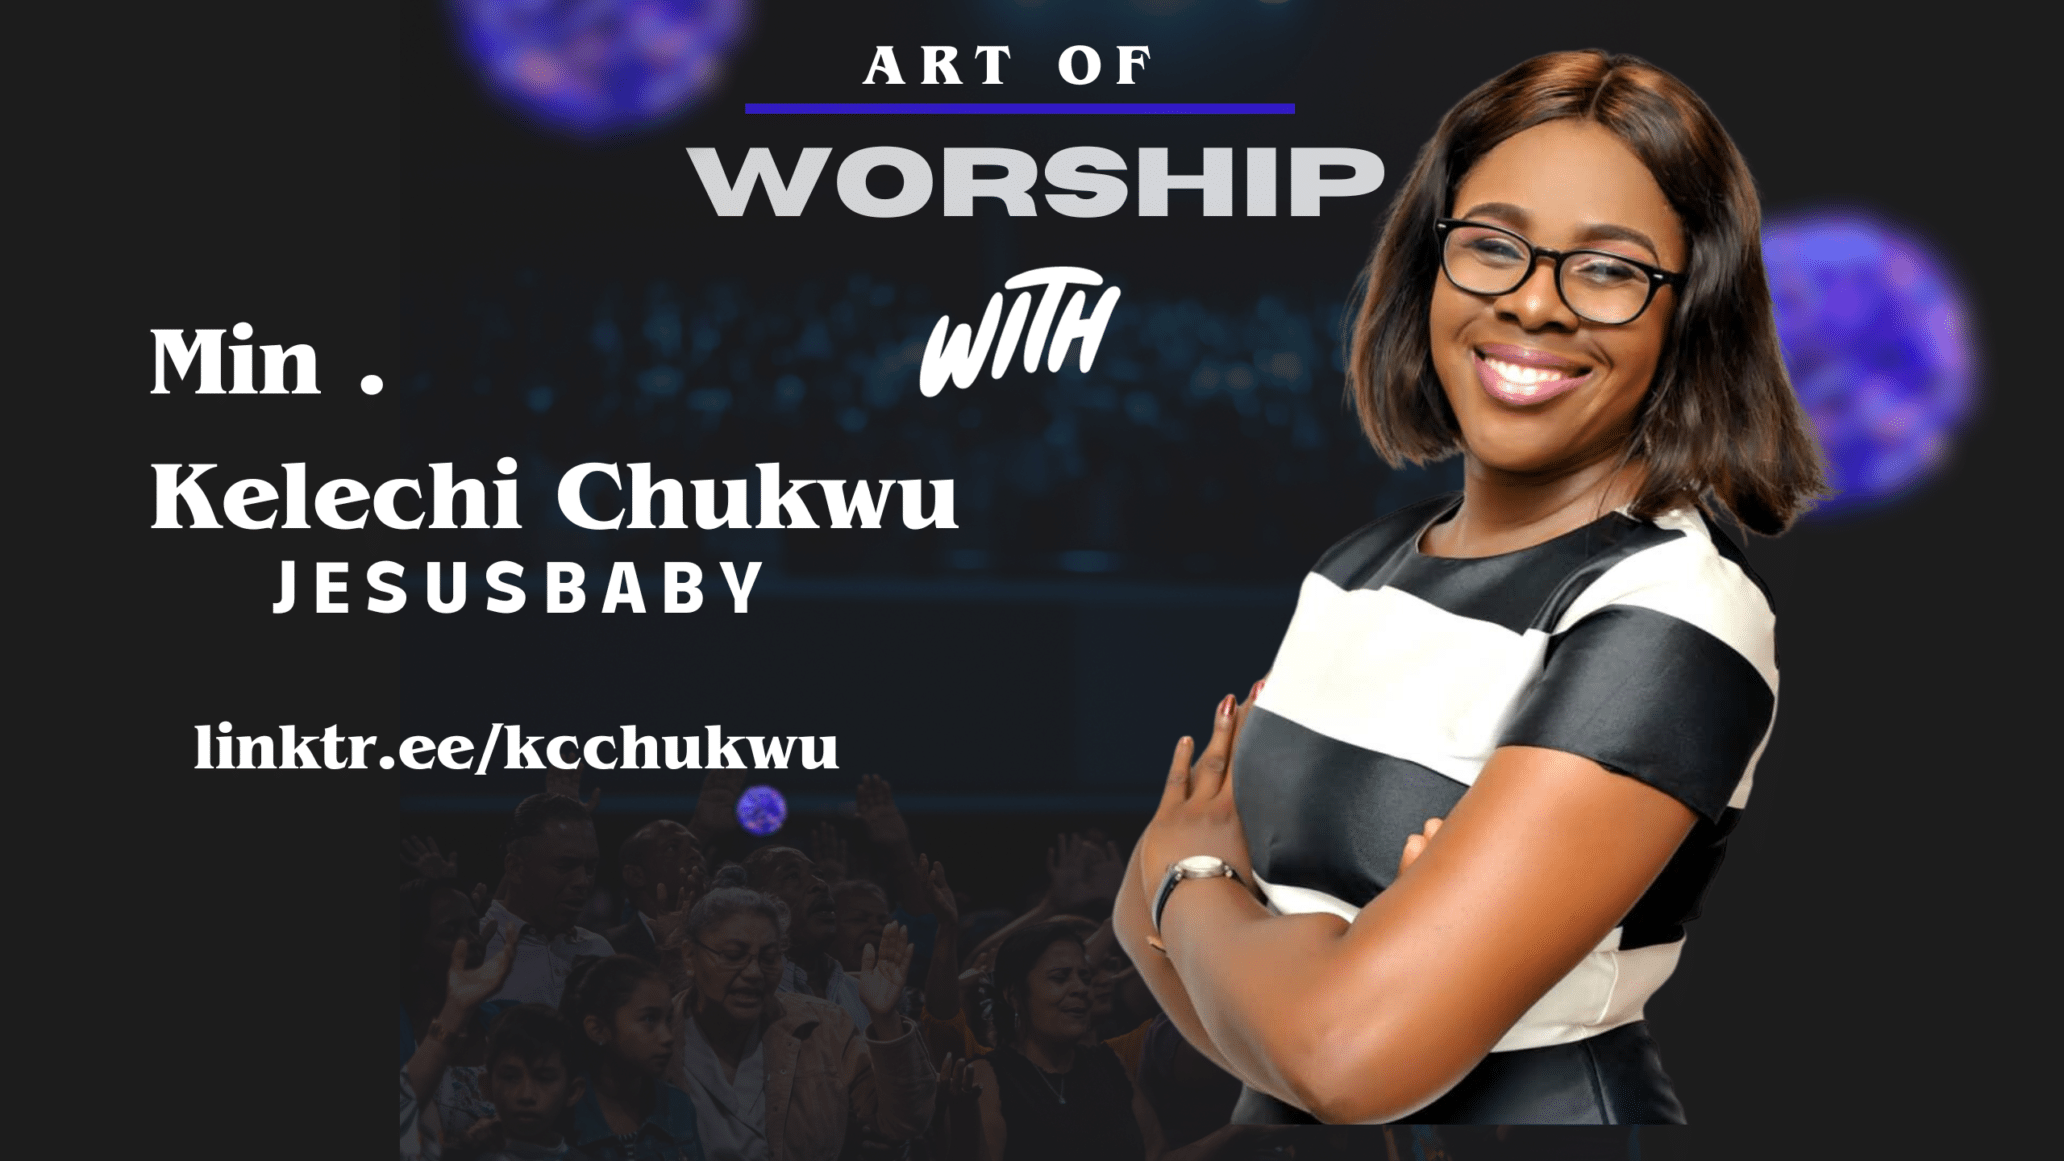 Art of Worship with Minister Kelechi Chukwu 13